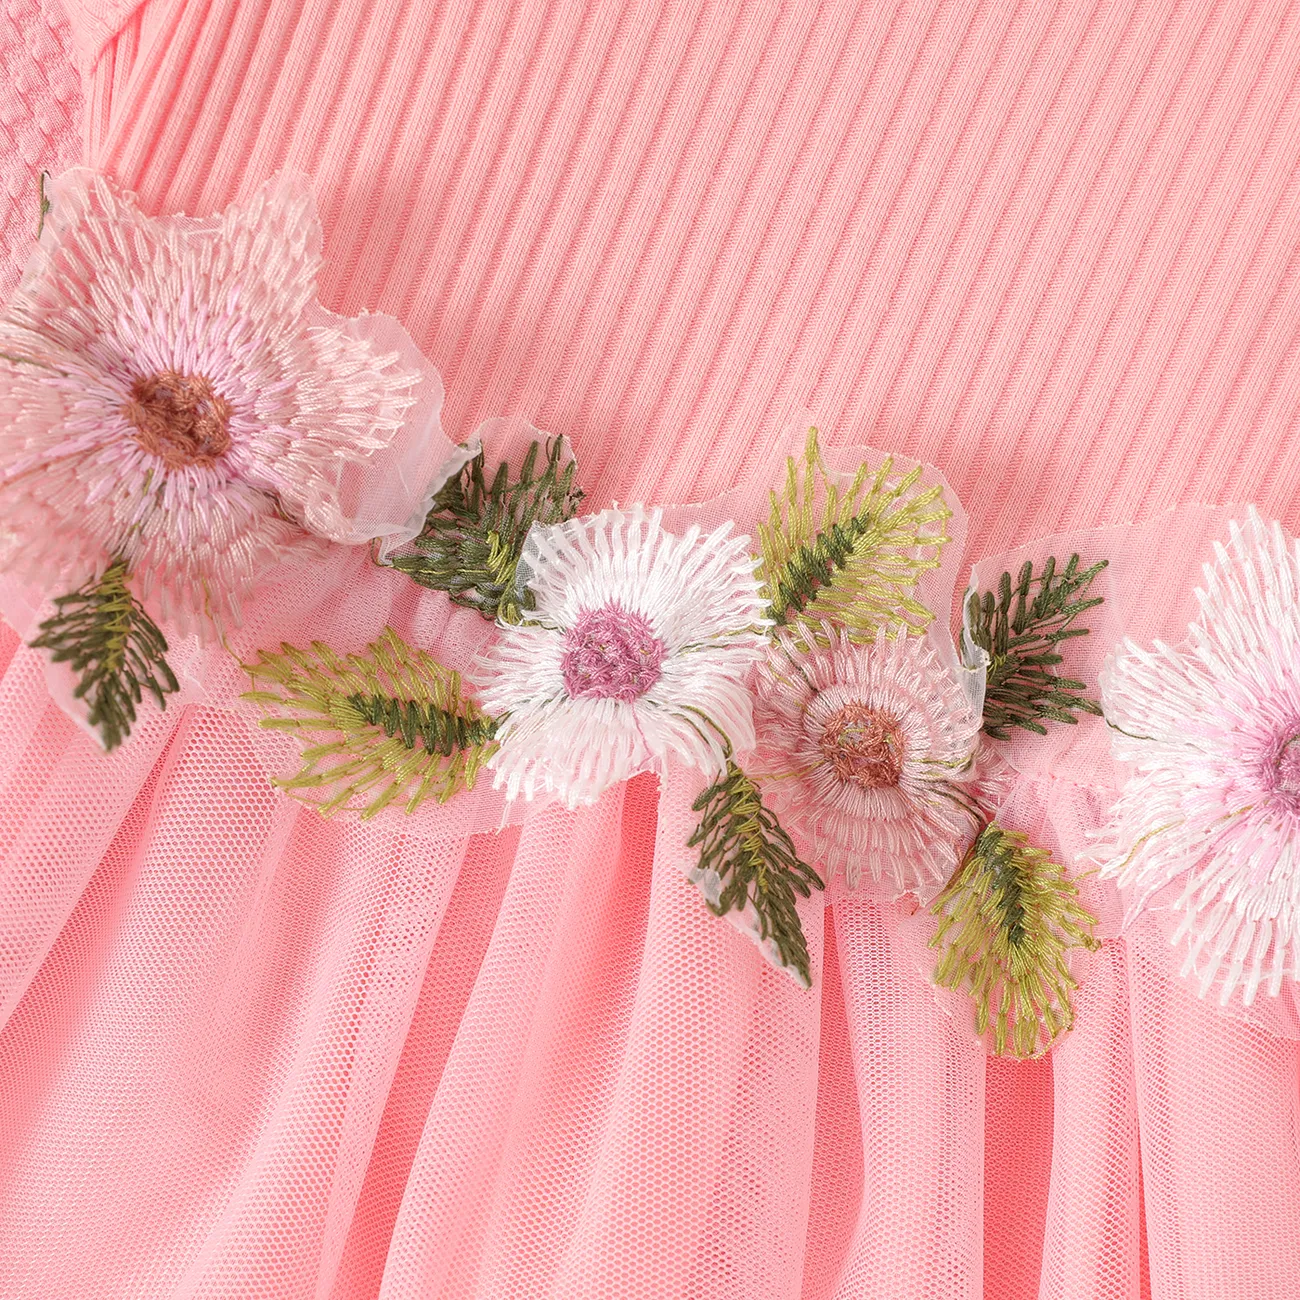 2件 嬰兒 布料拼接 甜美 無袖 套裝裙 粉色 big image 1